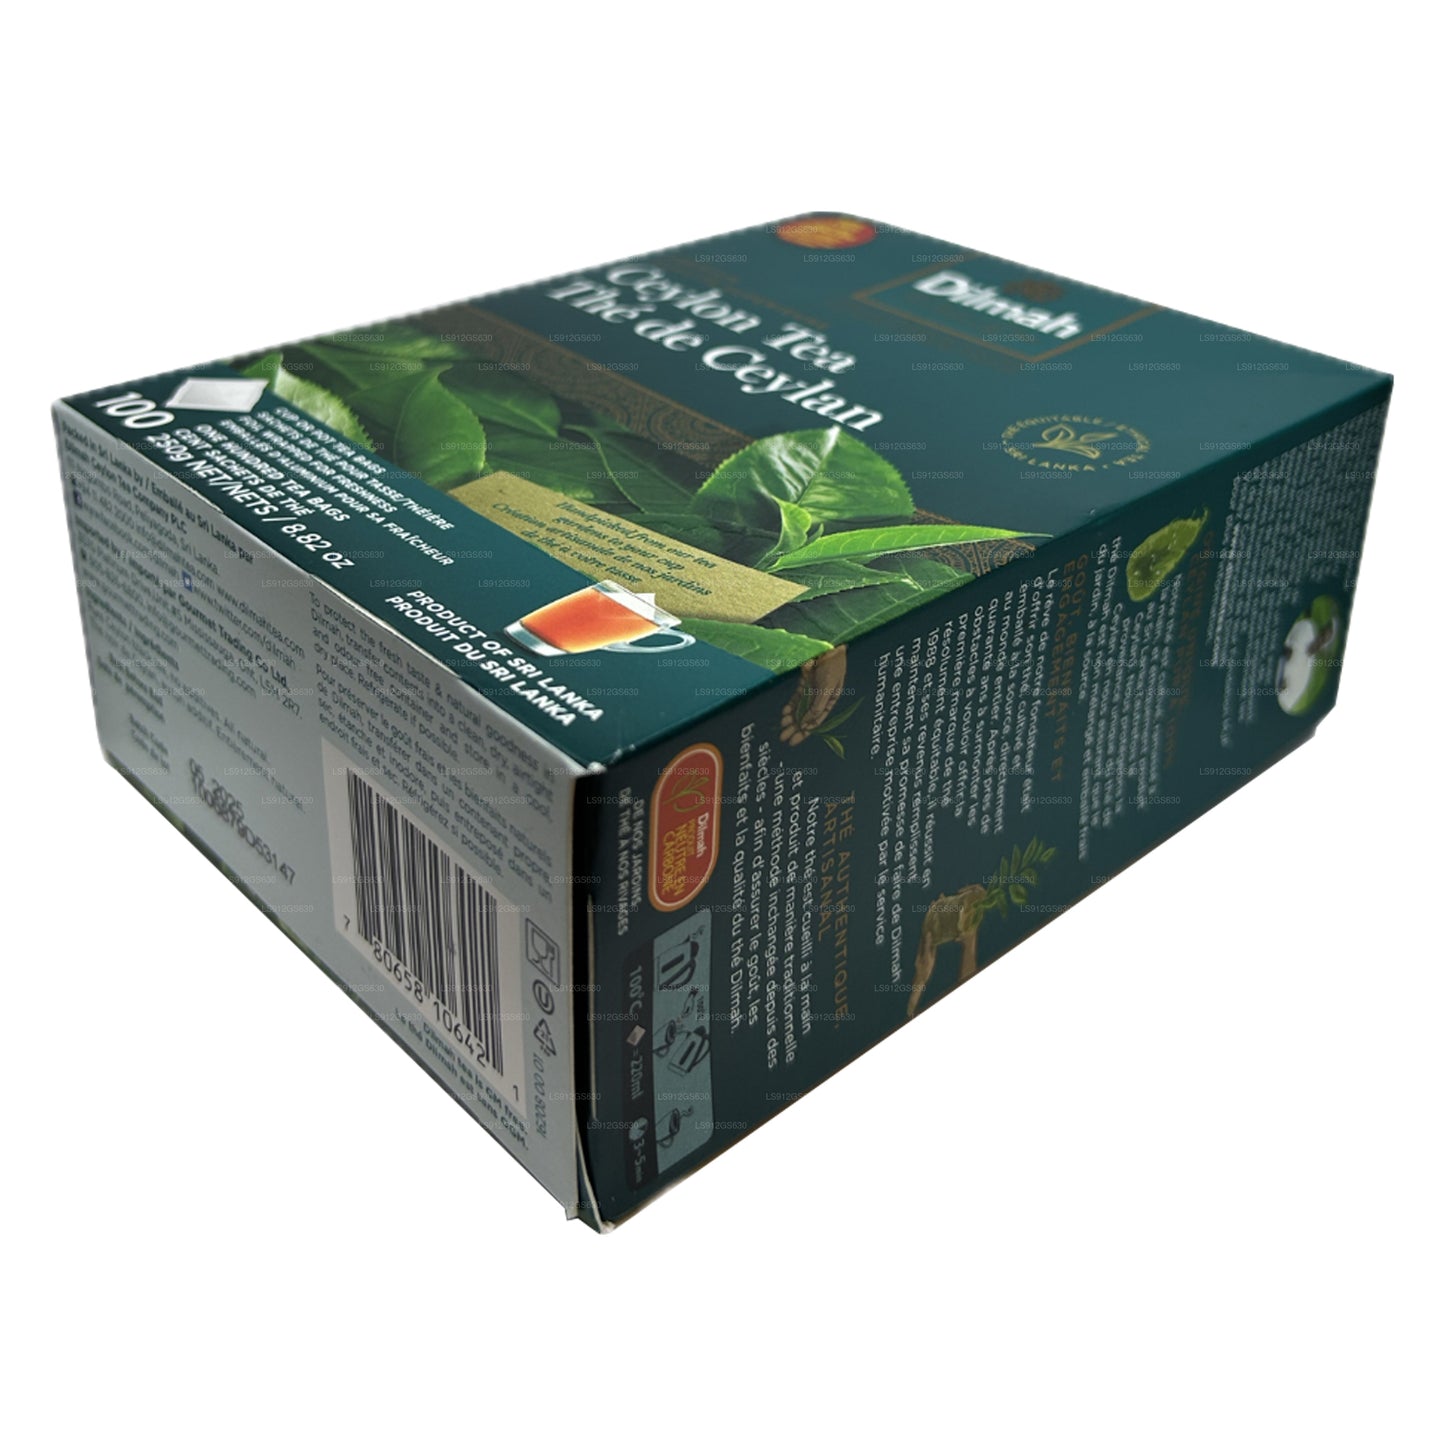 Dilmah Premium Ceylon čaj (250 g) 100 bezznačkových čajových sáčků